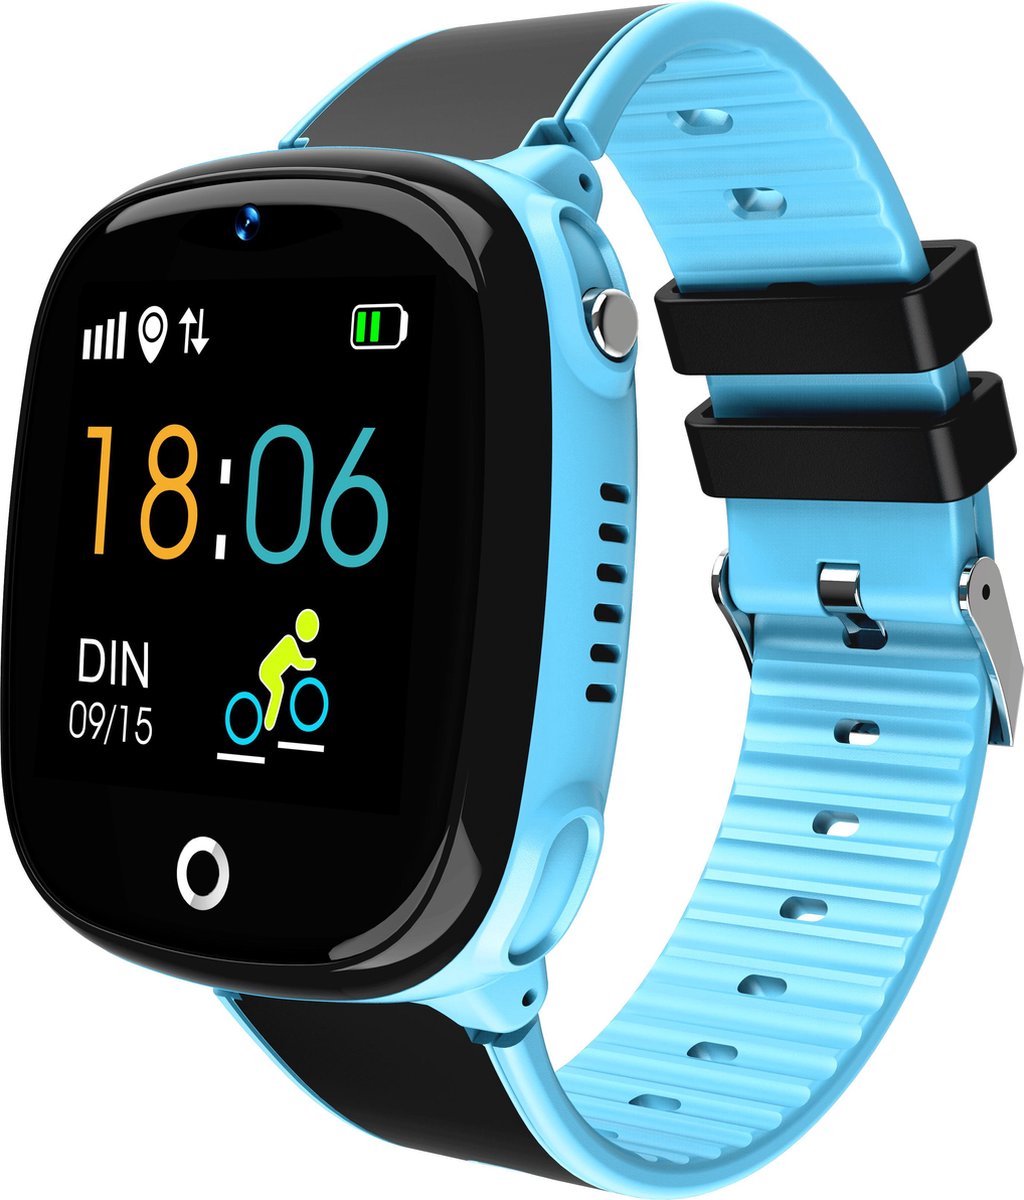 Smartwatch Kinderen - GPS Horloge voor Kids - Met Tracker Kind - Kinderhorloge - jongen / meisje - Waterbestendig - HD Camera - Inclusief Simkaart - Blauw